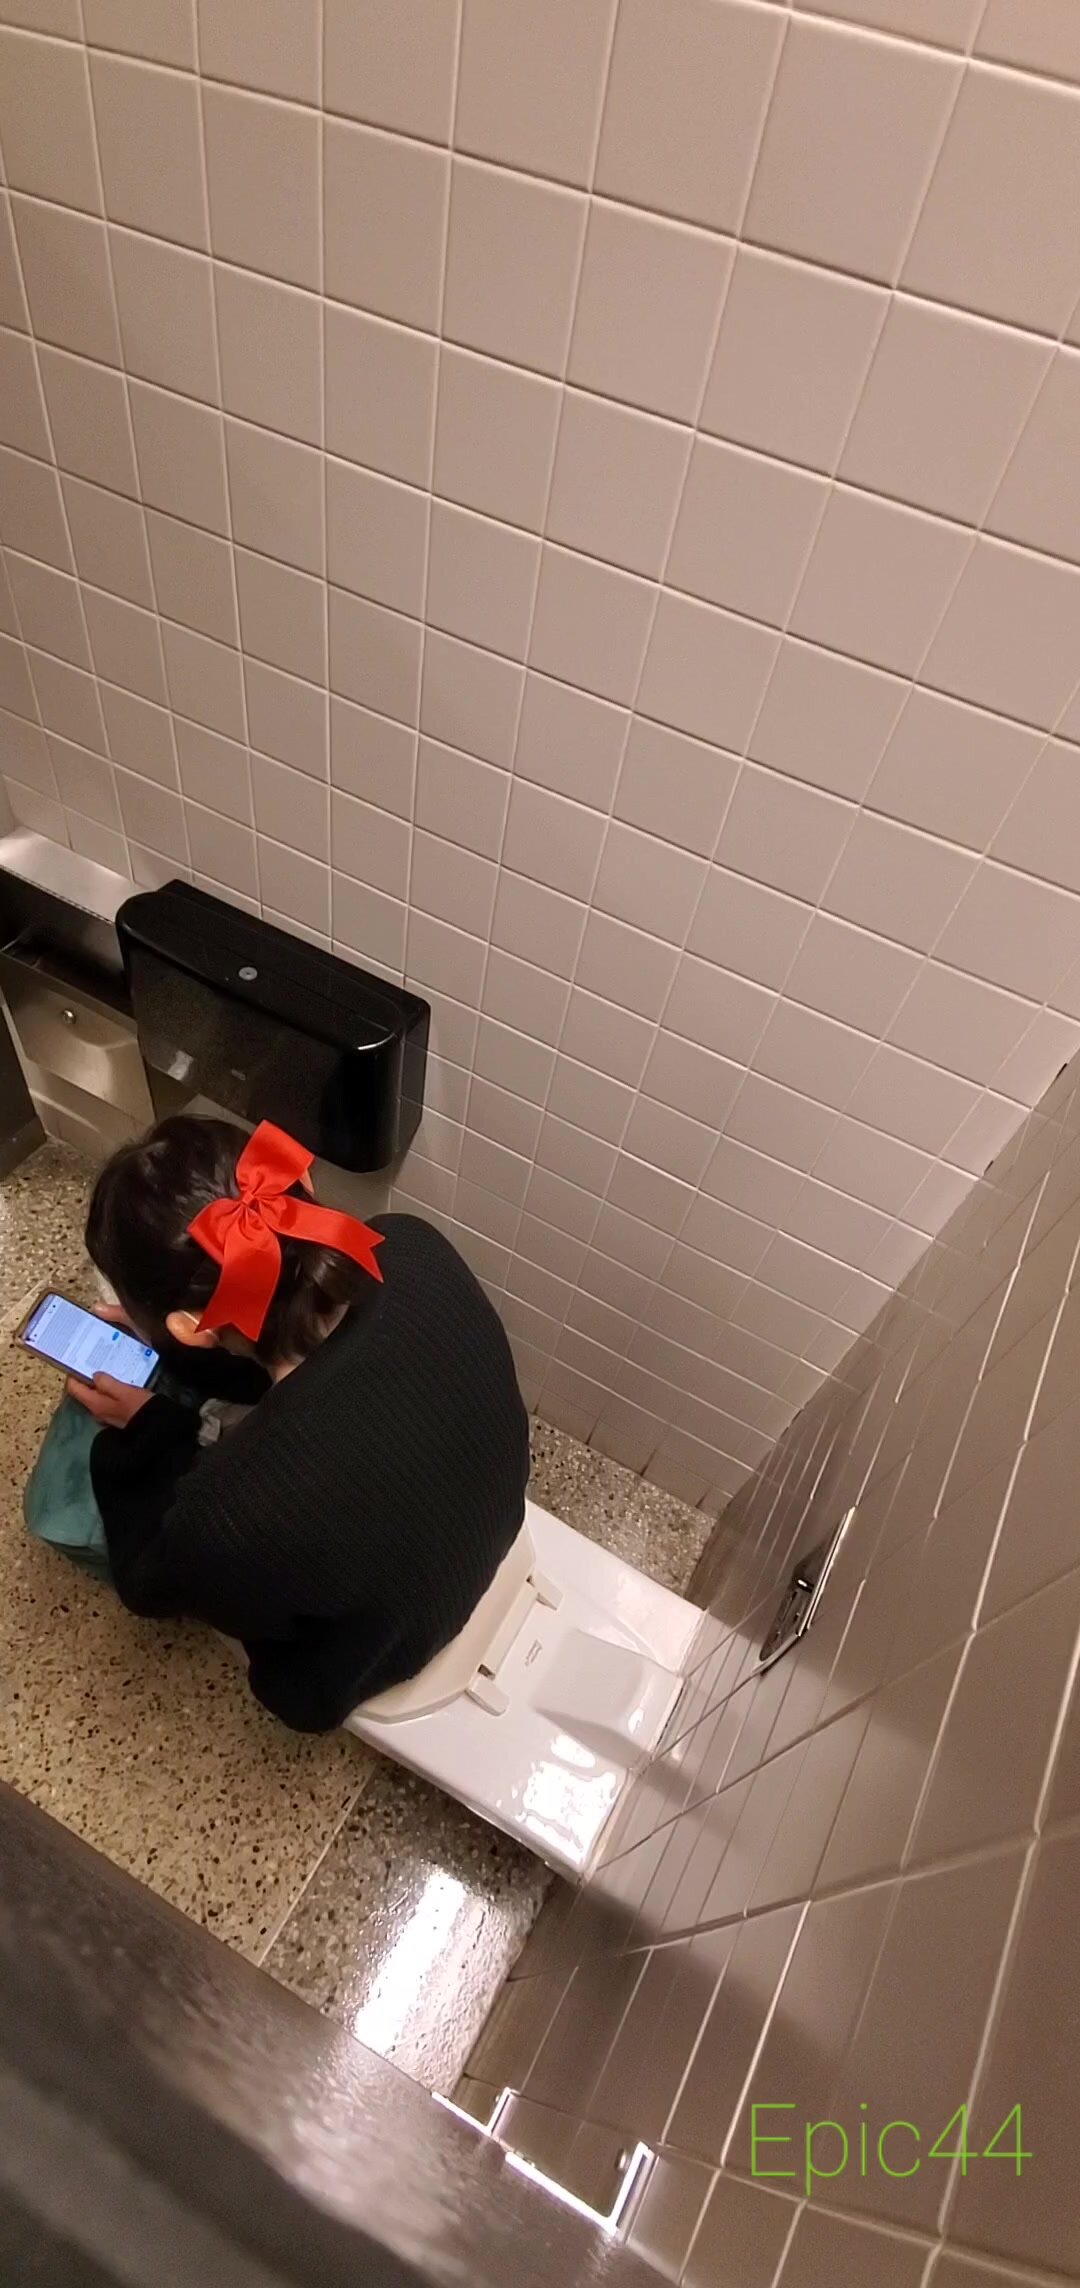 Girl pooping in public toilet - video 10